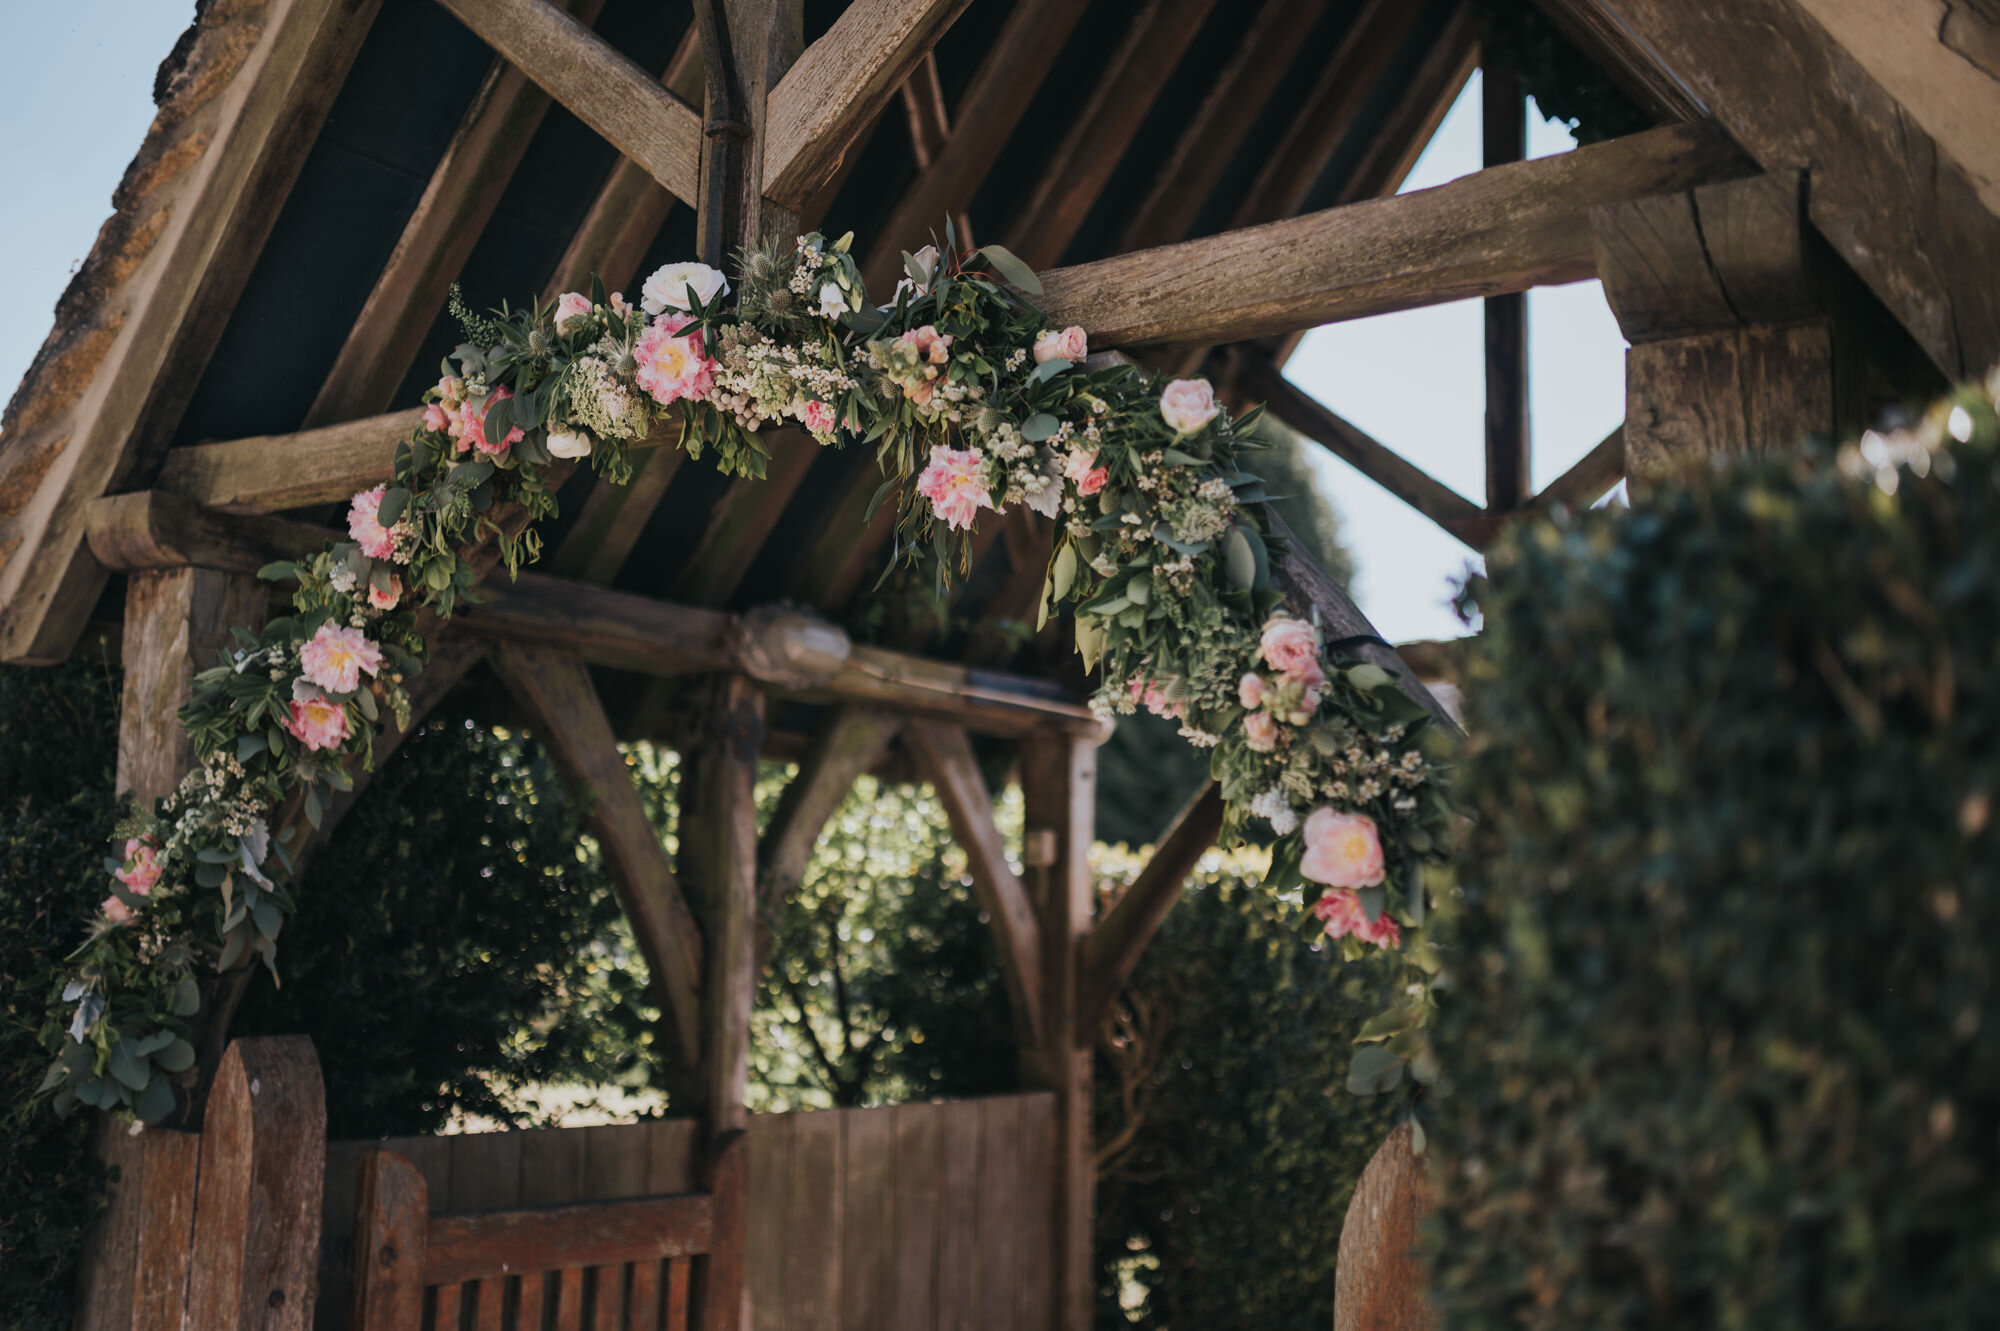 wellington-barn-wedding-photographer-wiltshire-8.jpg